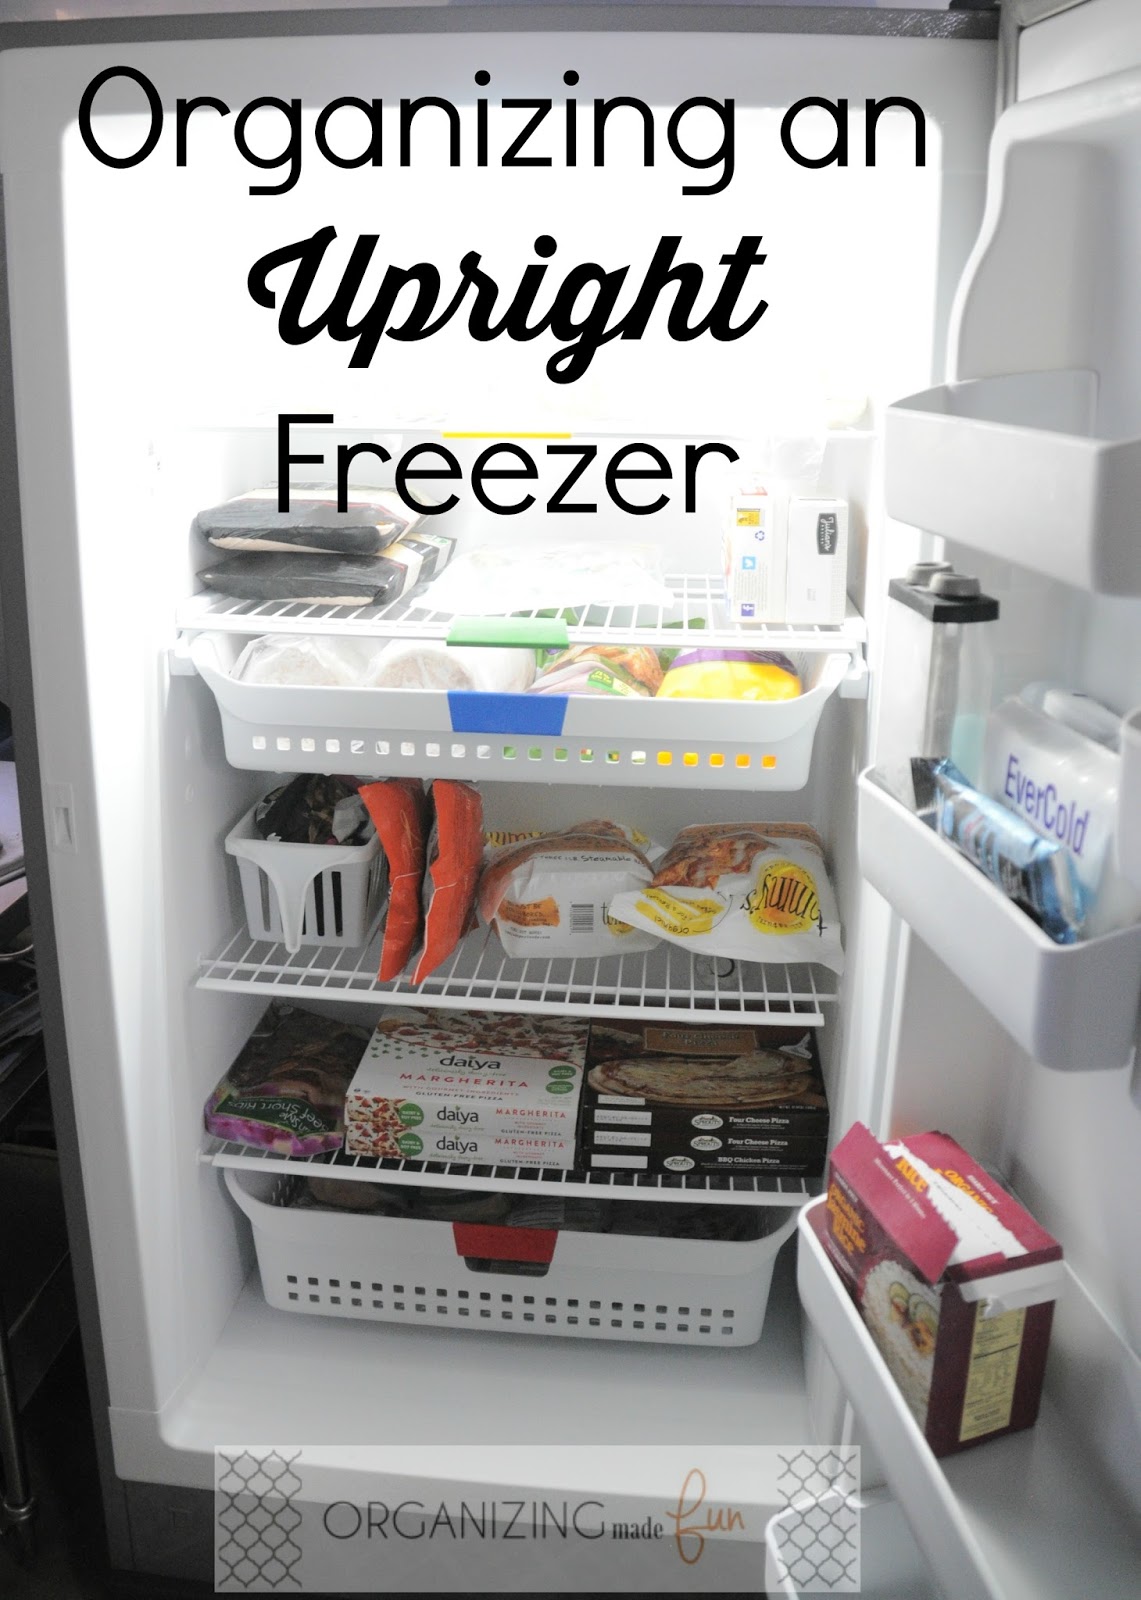 Upright Freezer Organizer